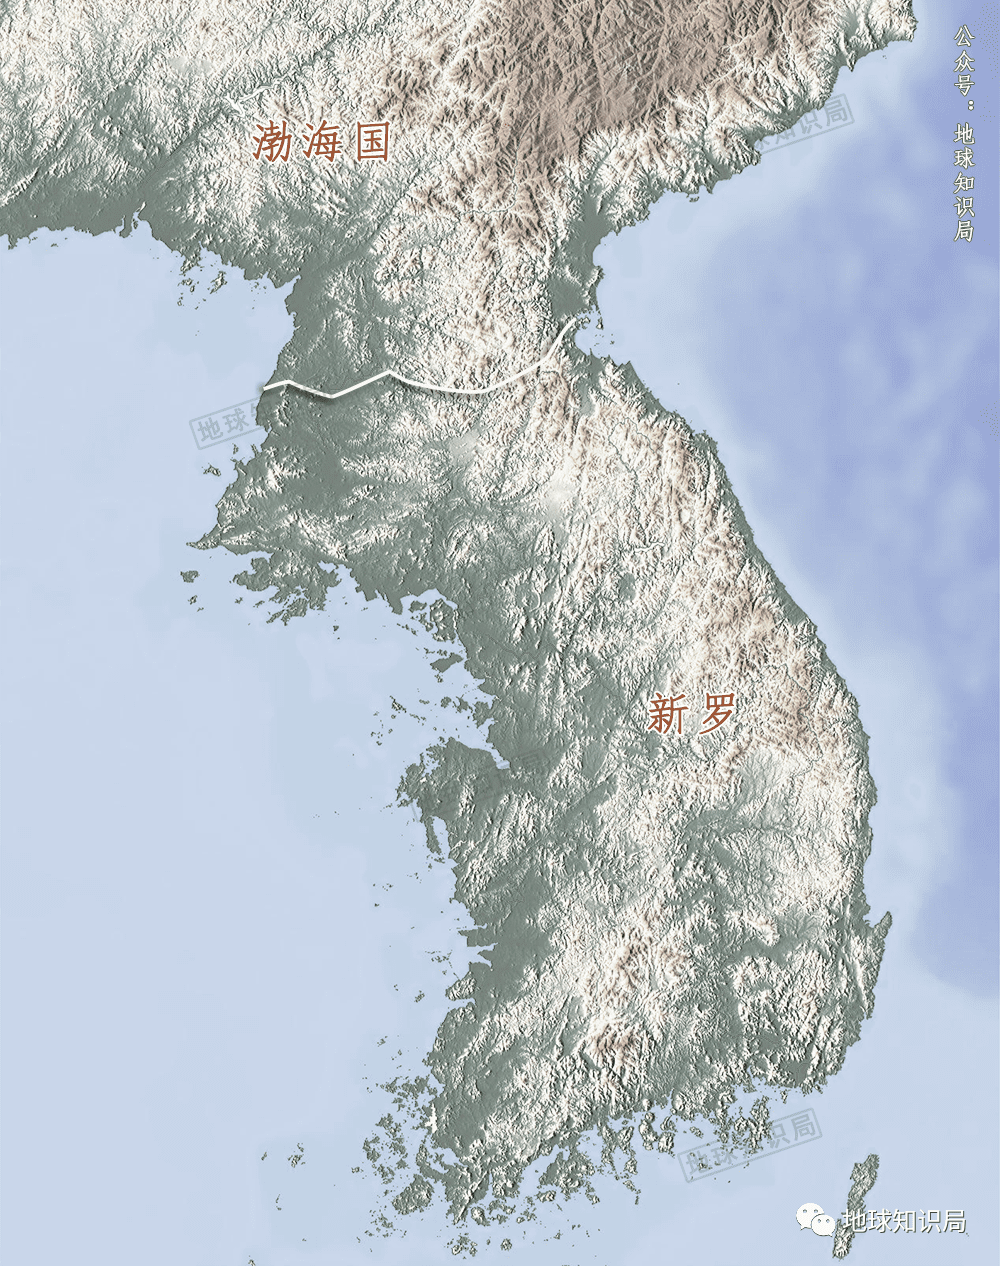 668年又与唐朝断断续续打了7年后，朝鲜半岛进入了南北国时代